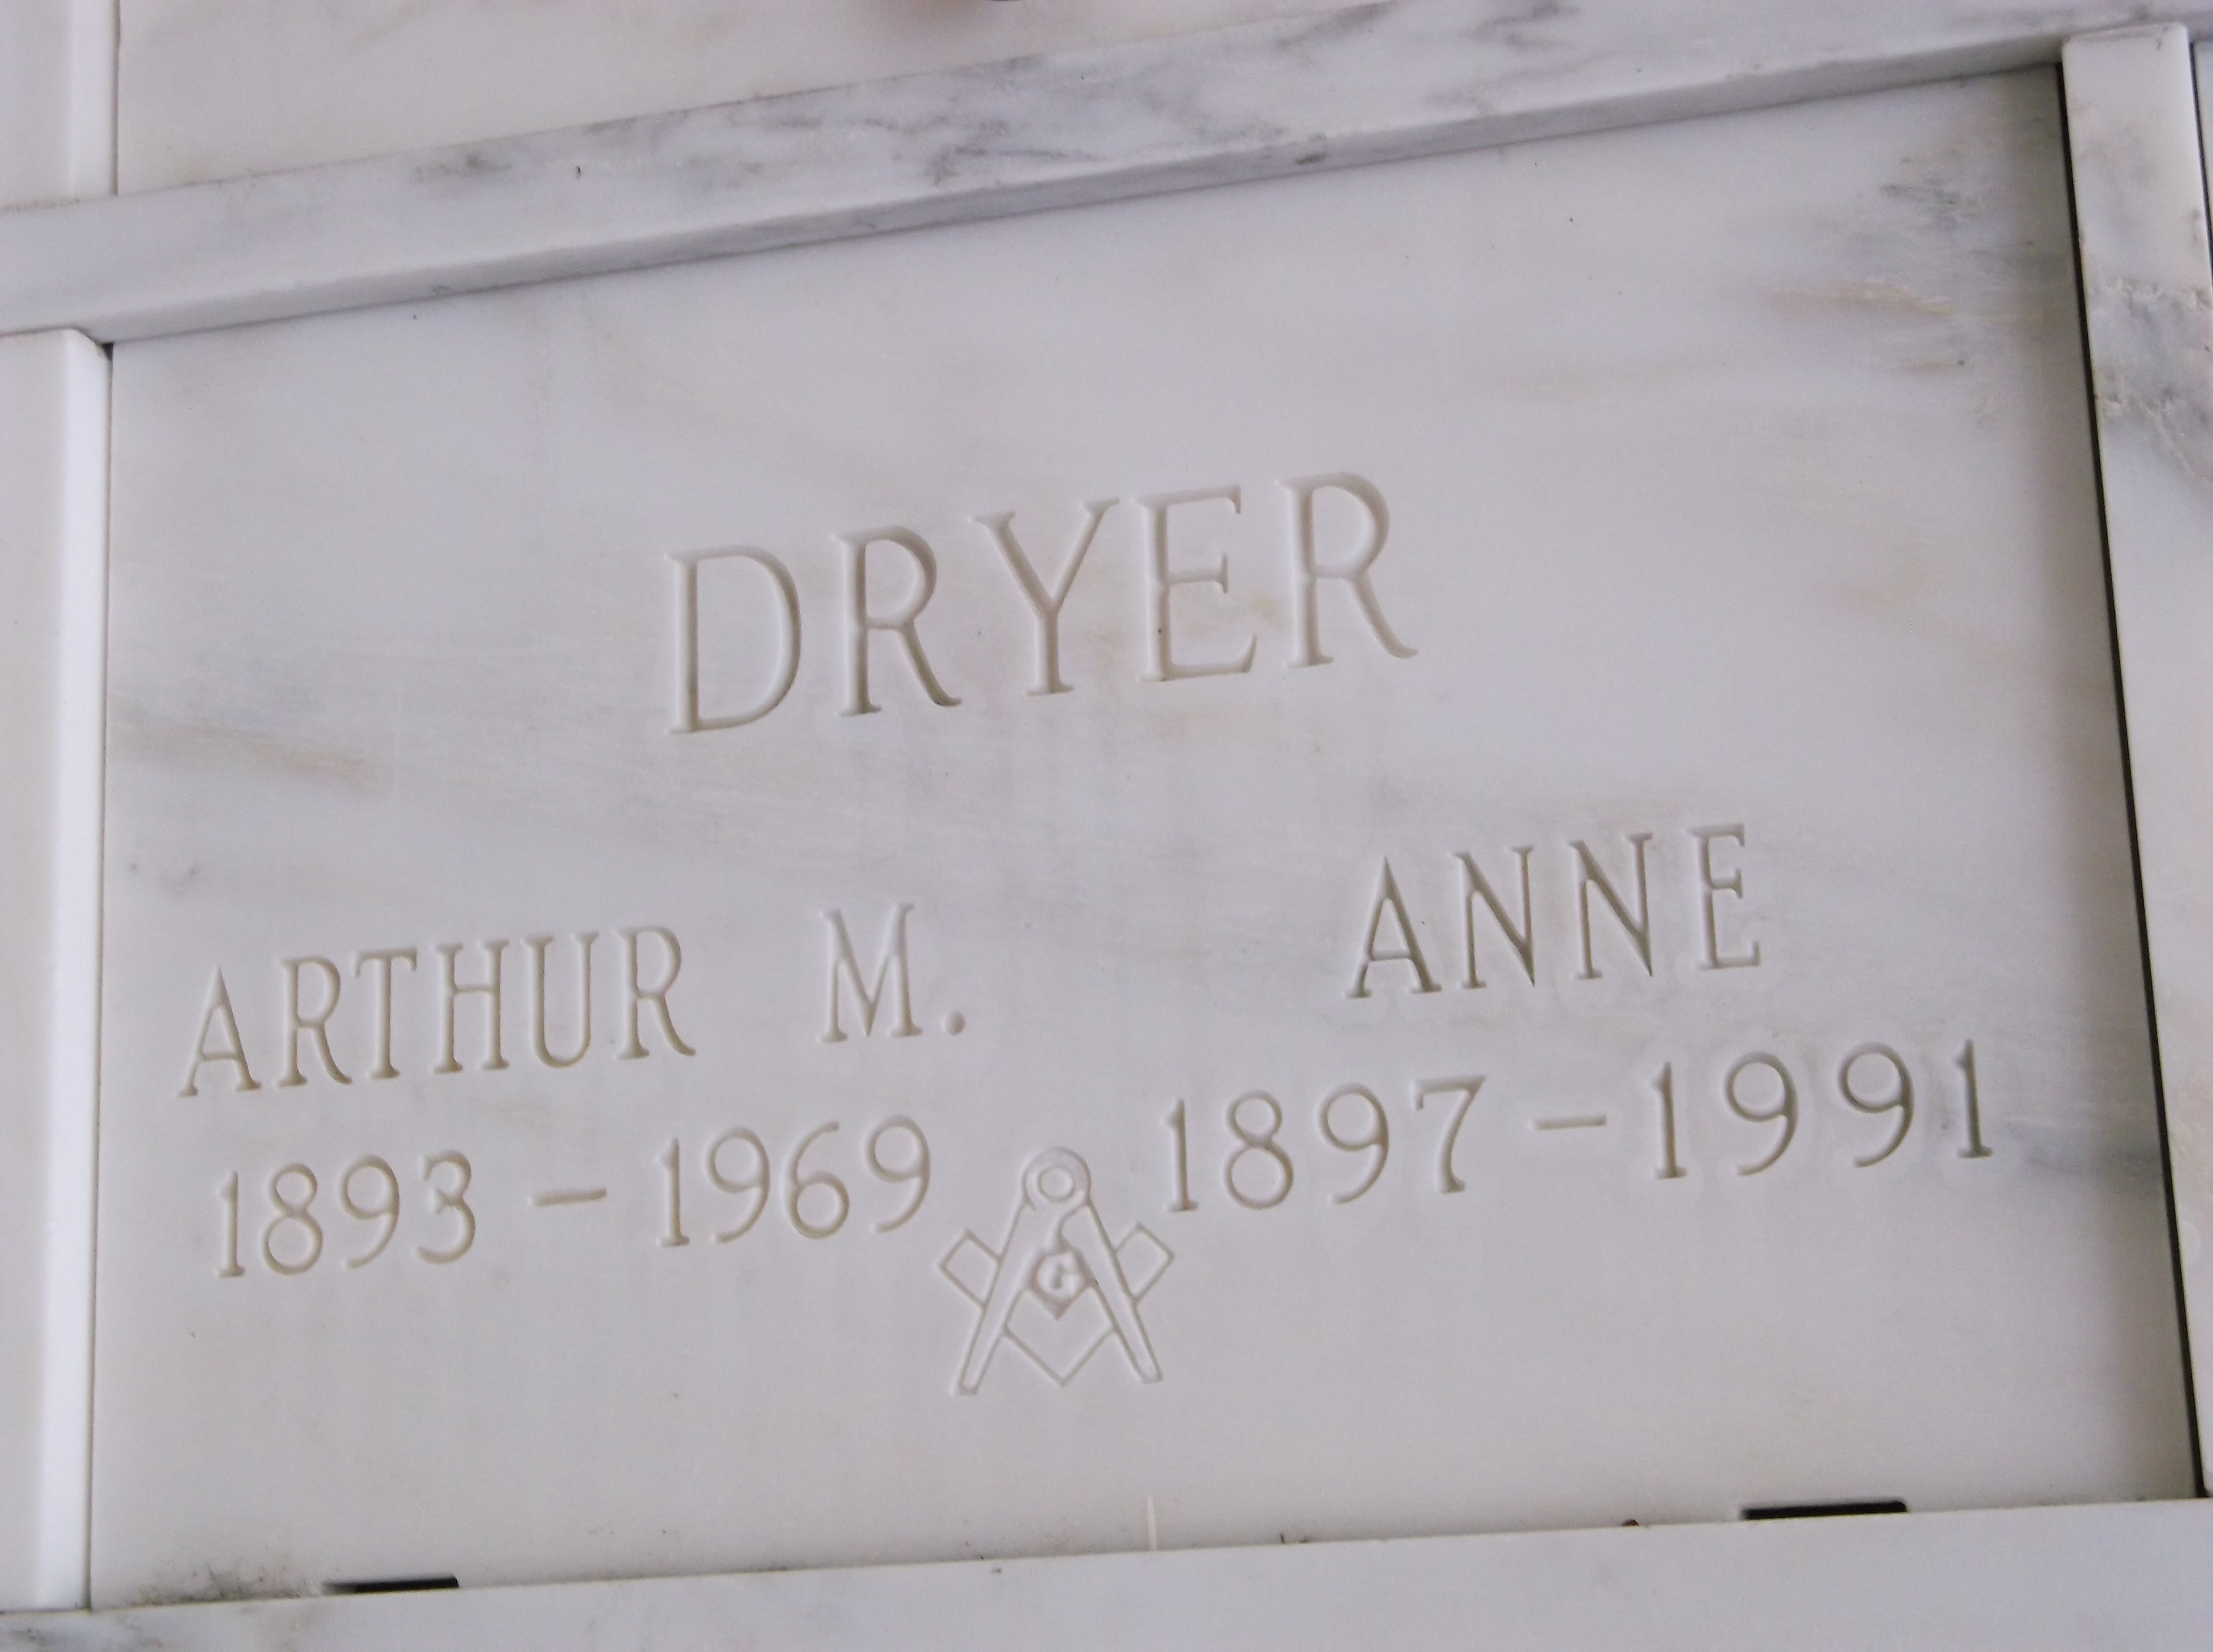 Anne Dryer